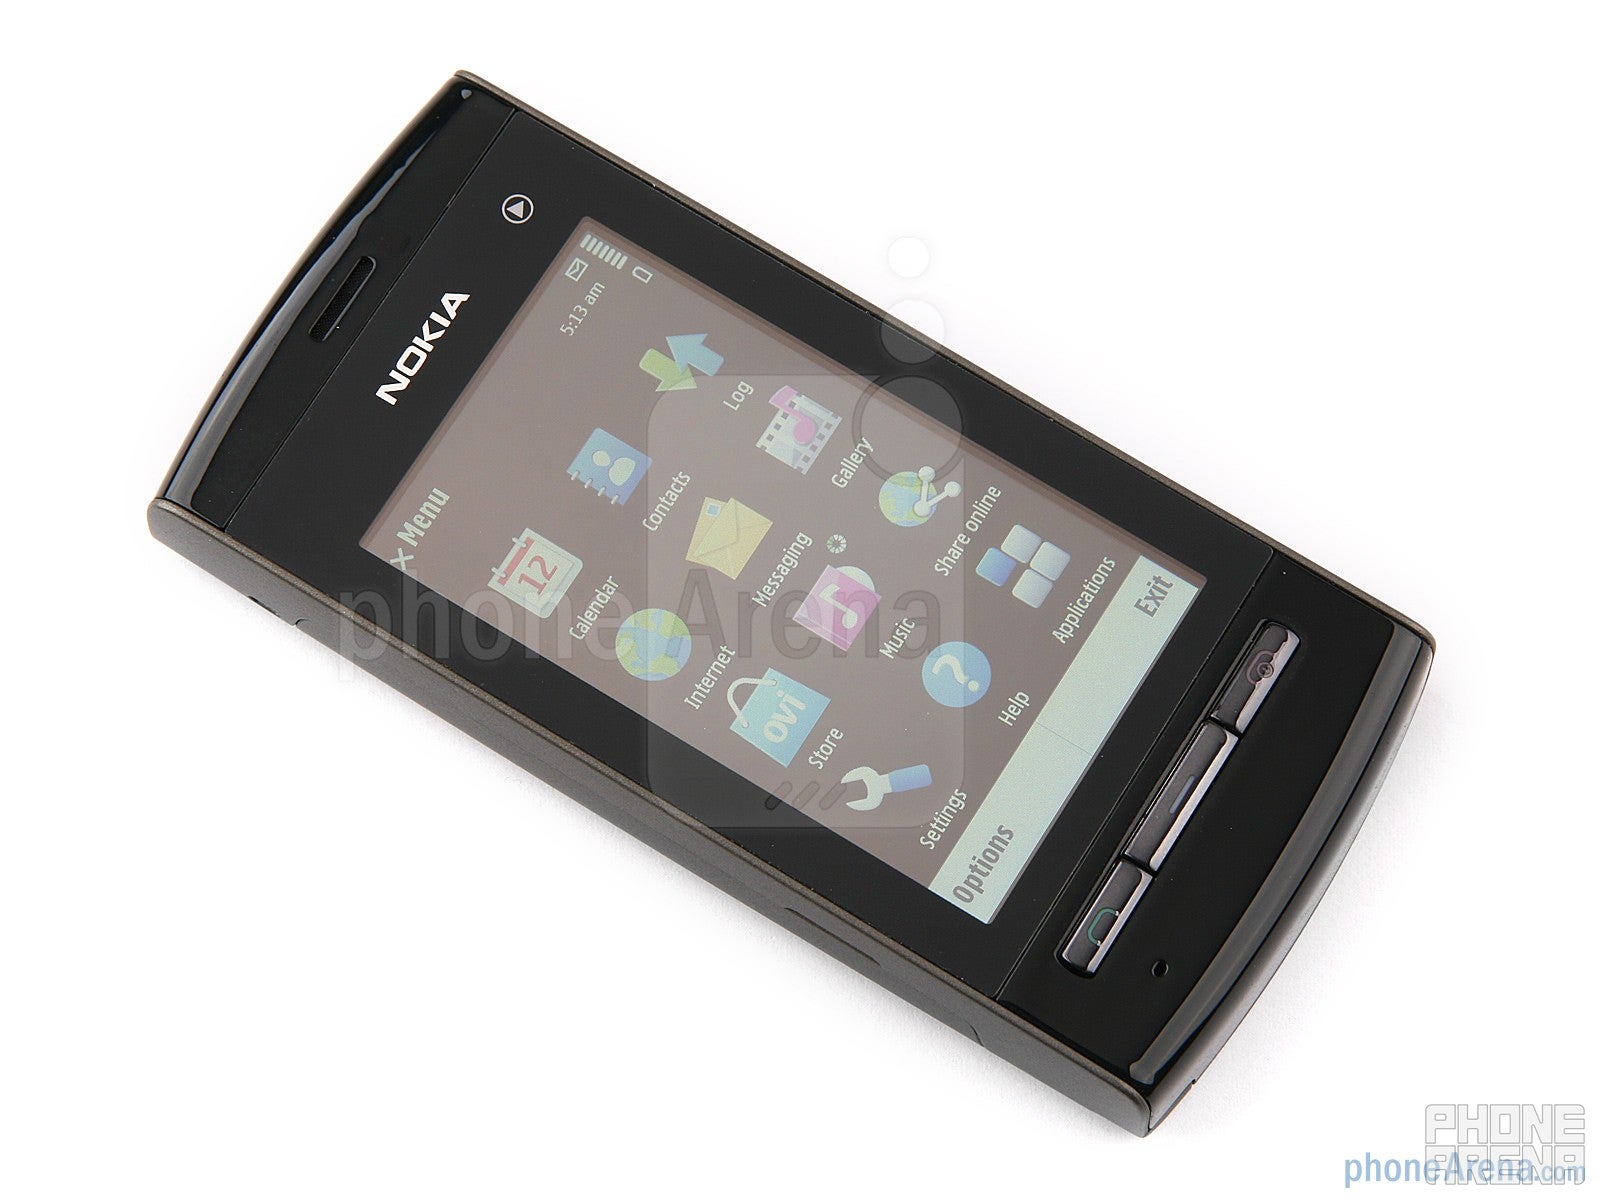 Nokia 5250 Review